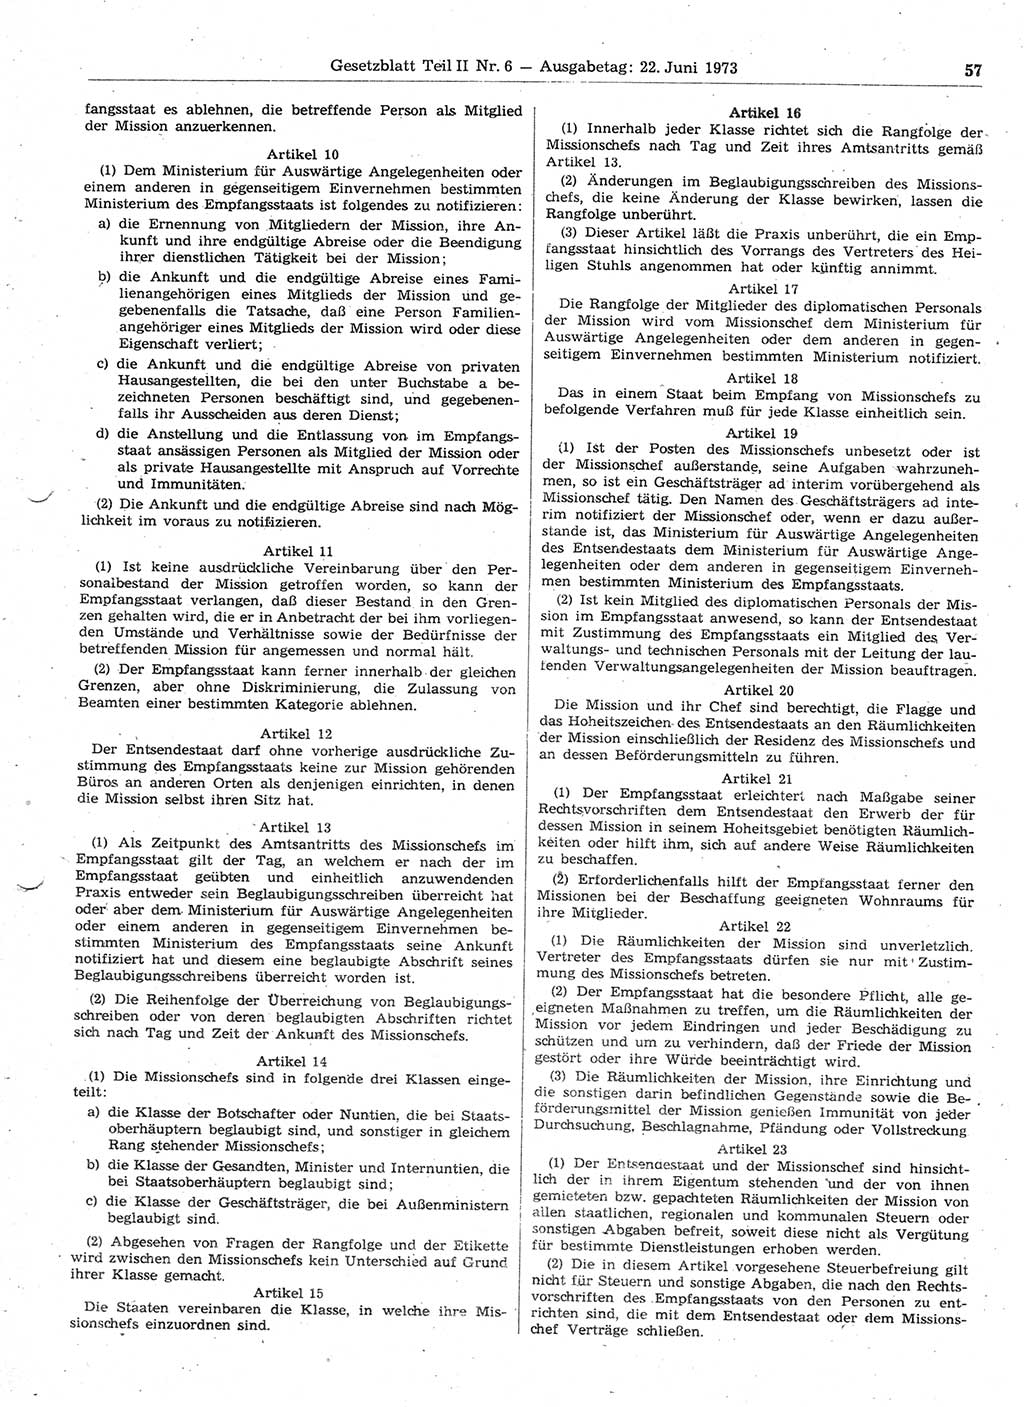 Gesetzblatt (GBl.) der Deutschen Demokratischen Republik (DDR) Teil ⅠⅠ 1973, Seite 57 (GBl. DDR ⅠⅠ 1973, S. 57)